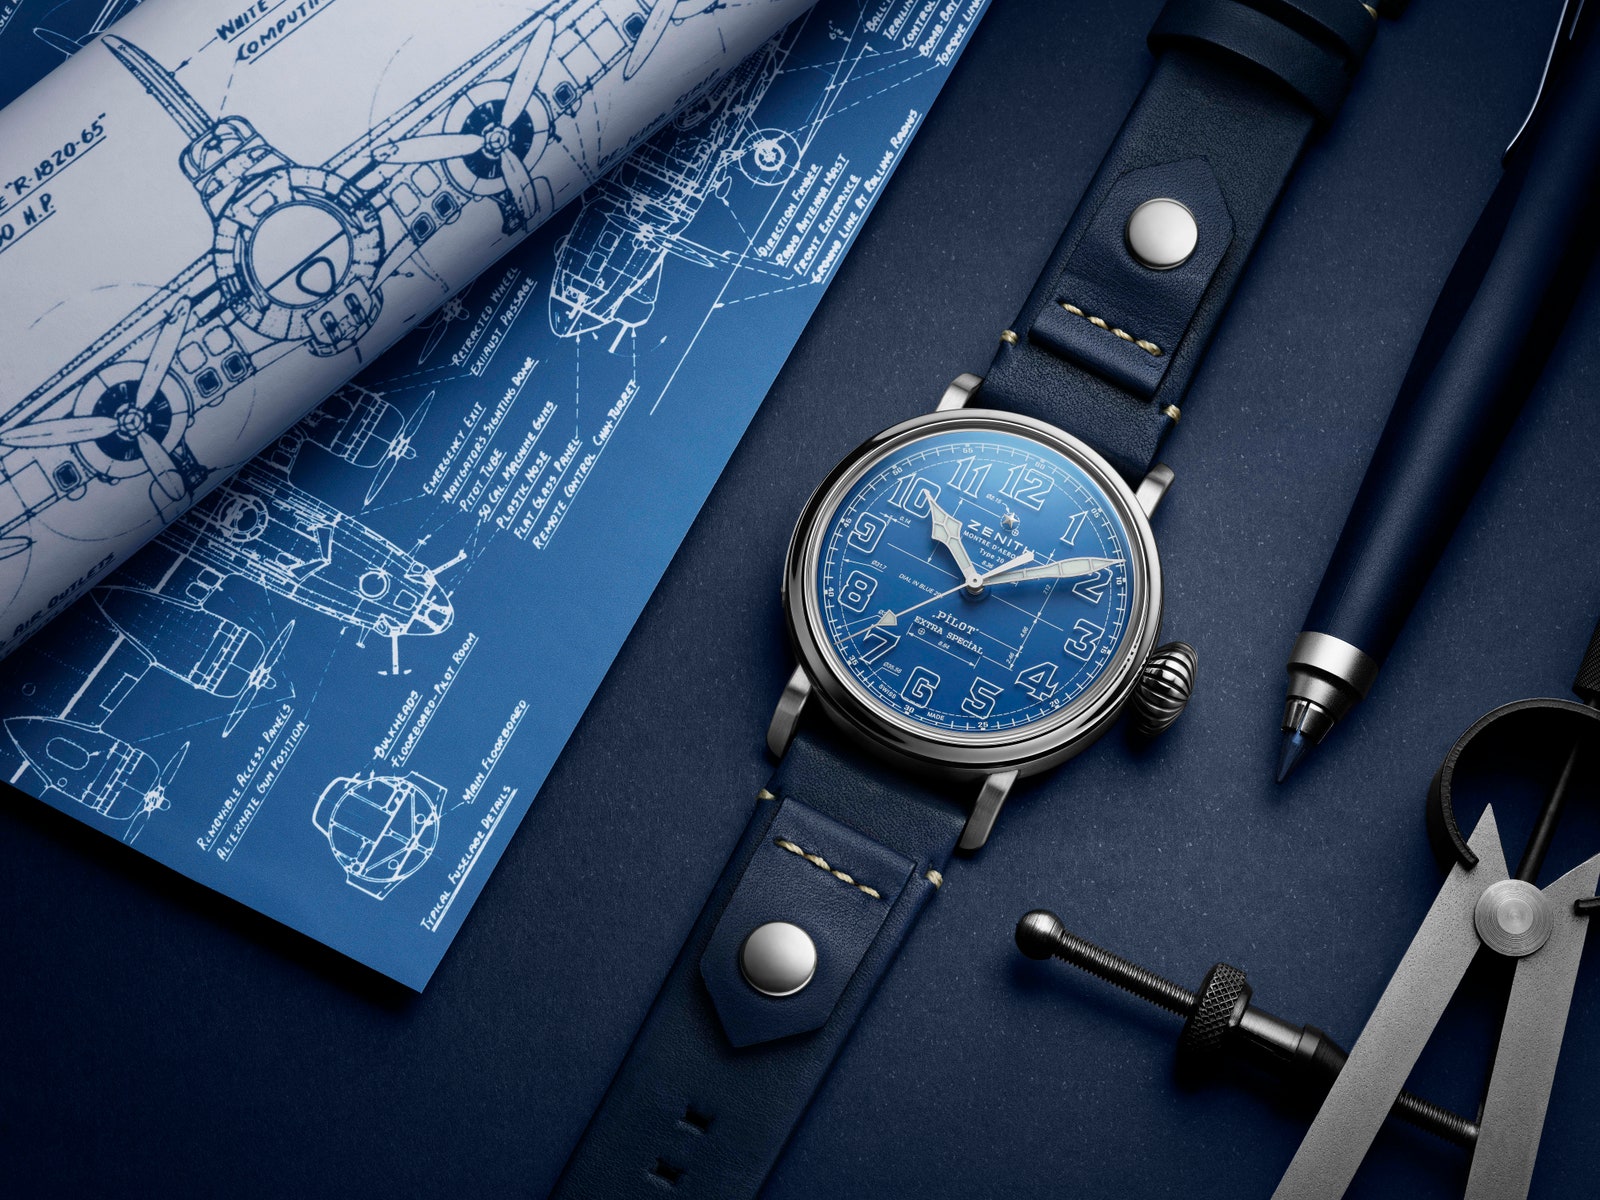 Аксессуар дня небесноголубые часы Zenith Pilot Type 20 Blueprint вдохновленные чертежами первых самолетов